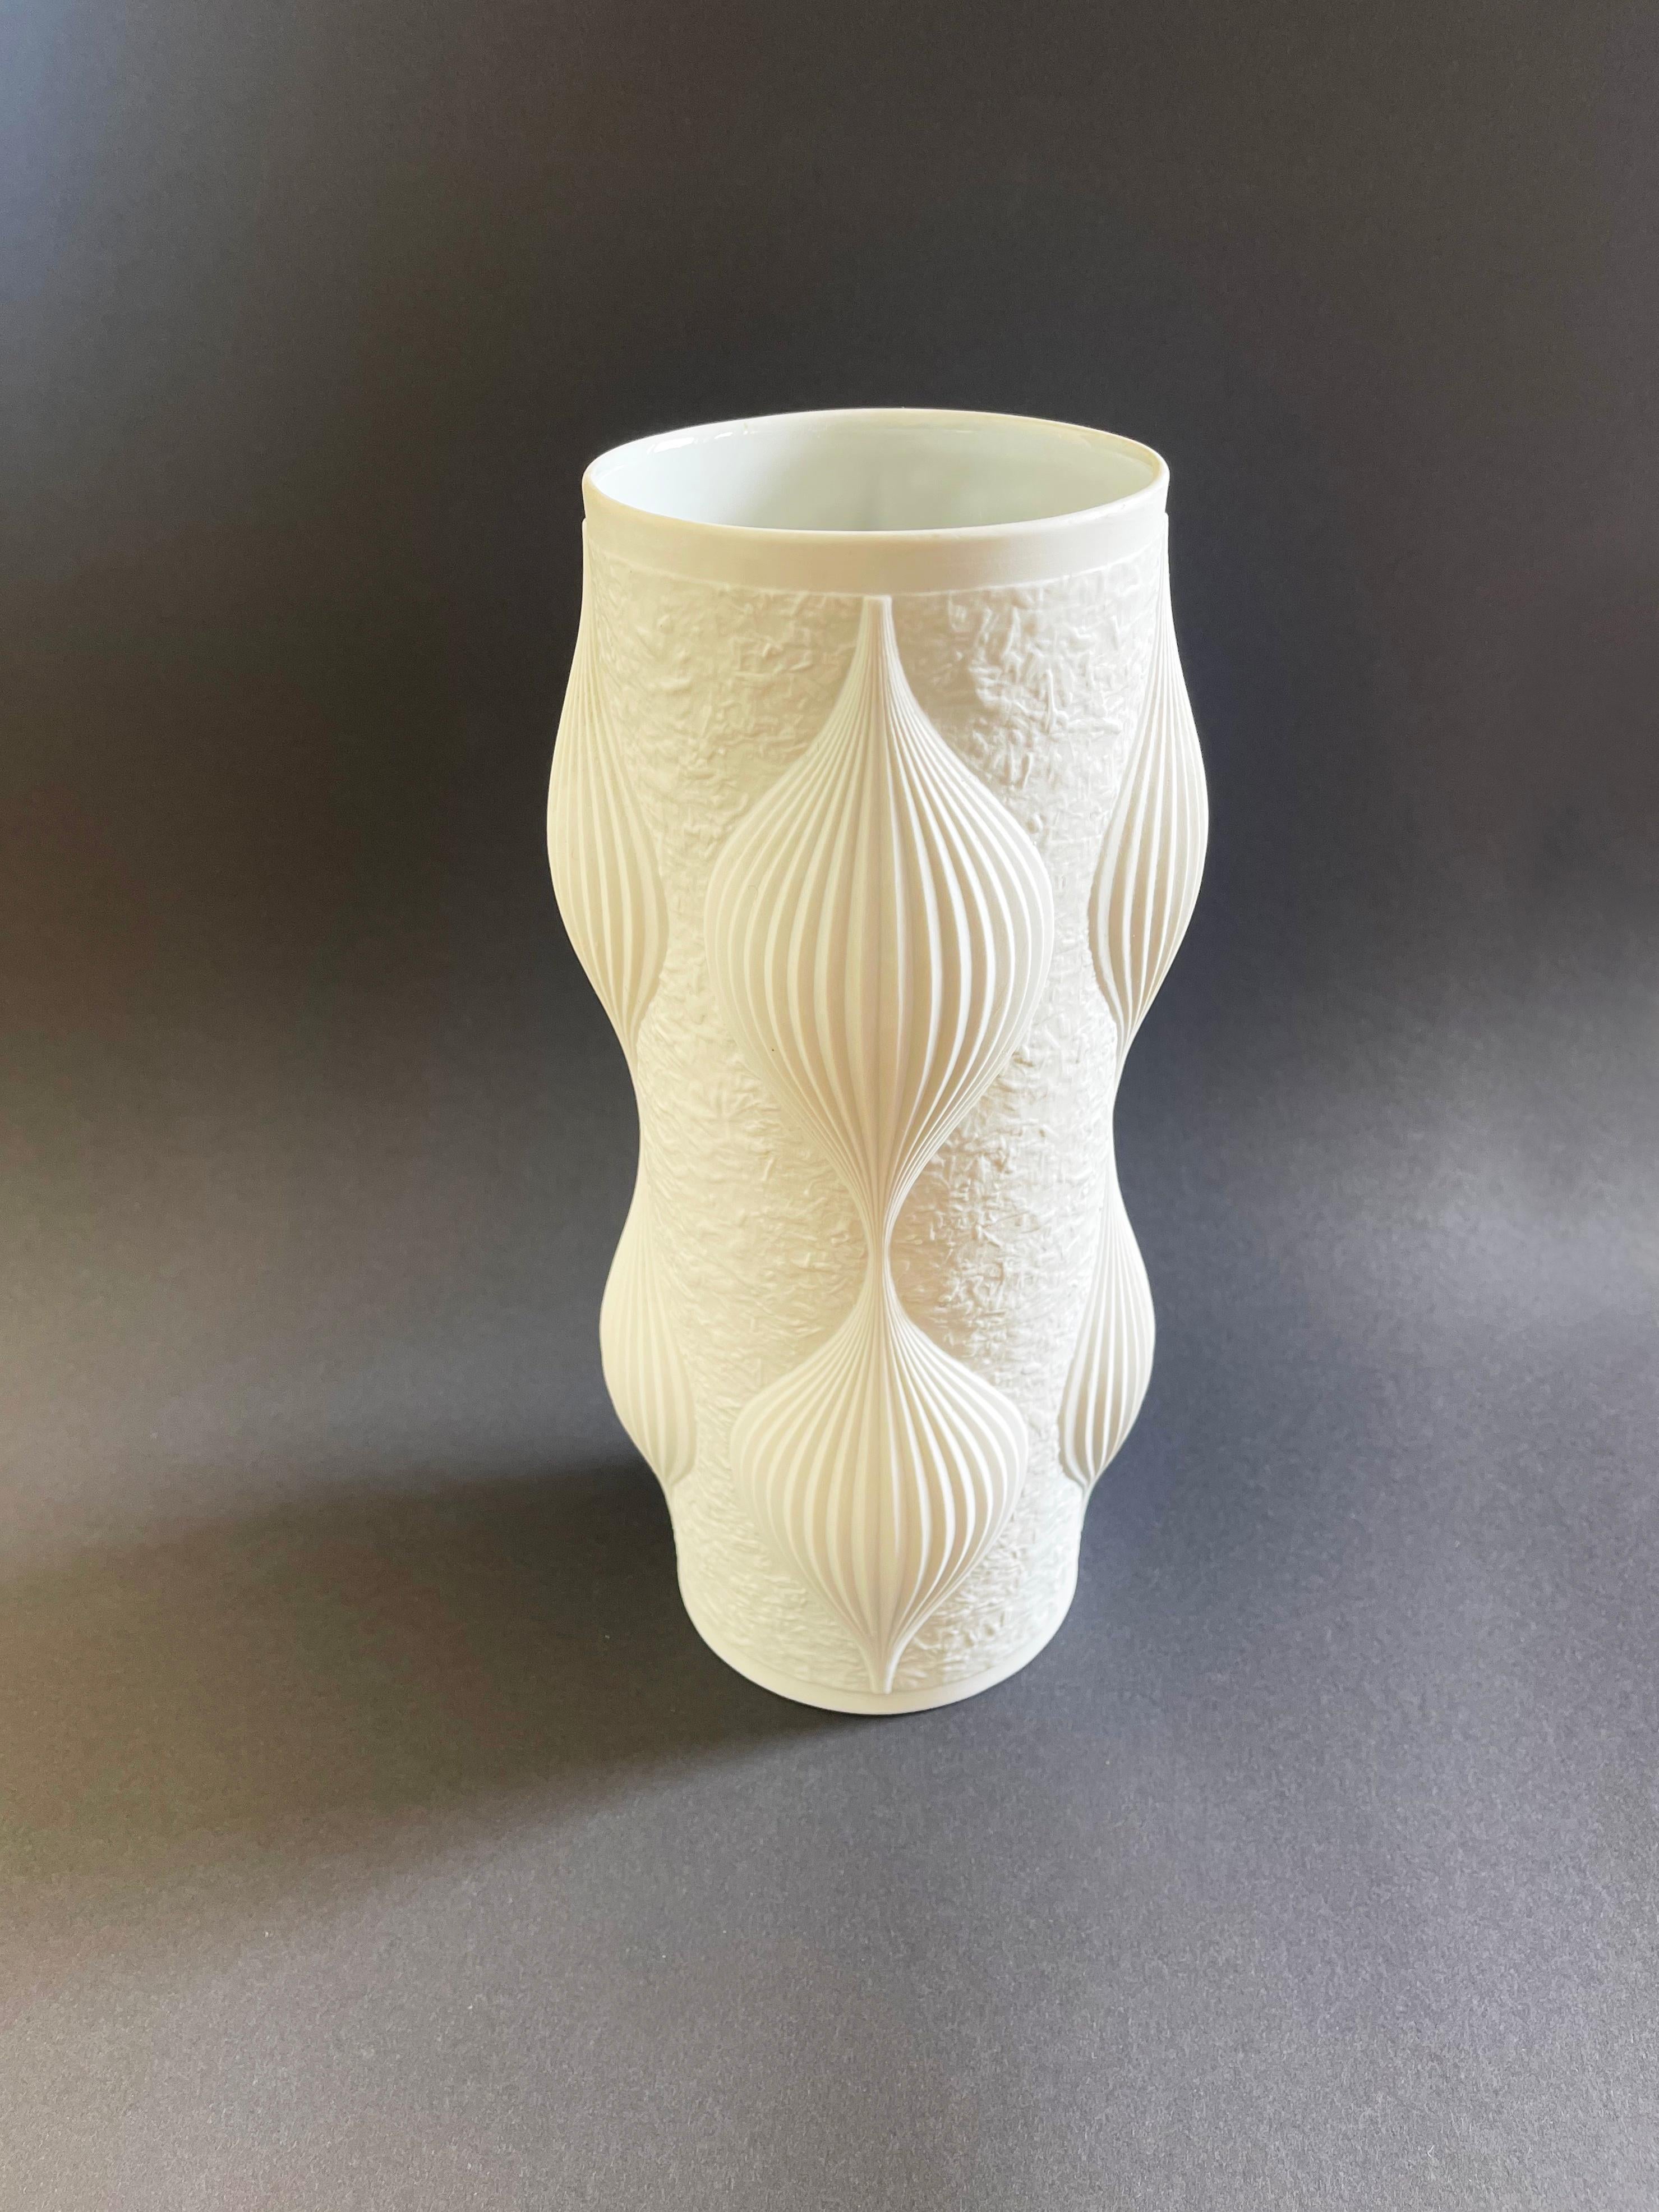 Eine erstaunliche Biskuit-Porzellan Mitte des Jahrhunderts Studio Kunst Keramik Vase, Op-Art auf dem Höhepunkt, in Deutschland gemacht, von Heinrich Fuchs für Hutschenreuther, ca. 1960er Jahre. Vase ist in sehr gutem Zustand ohne Mängel.